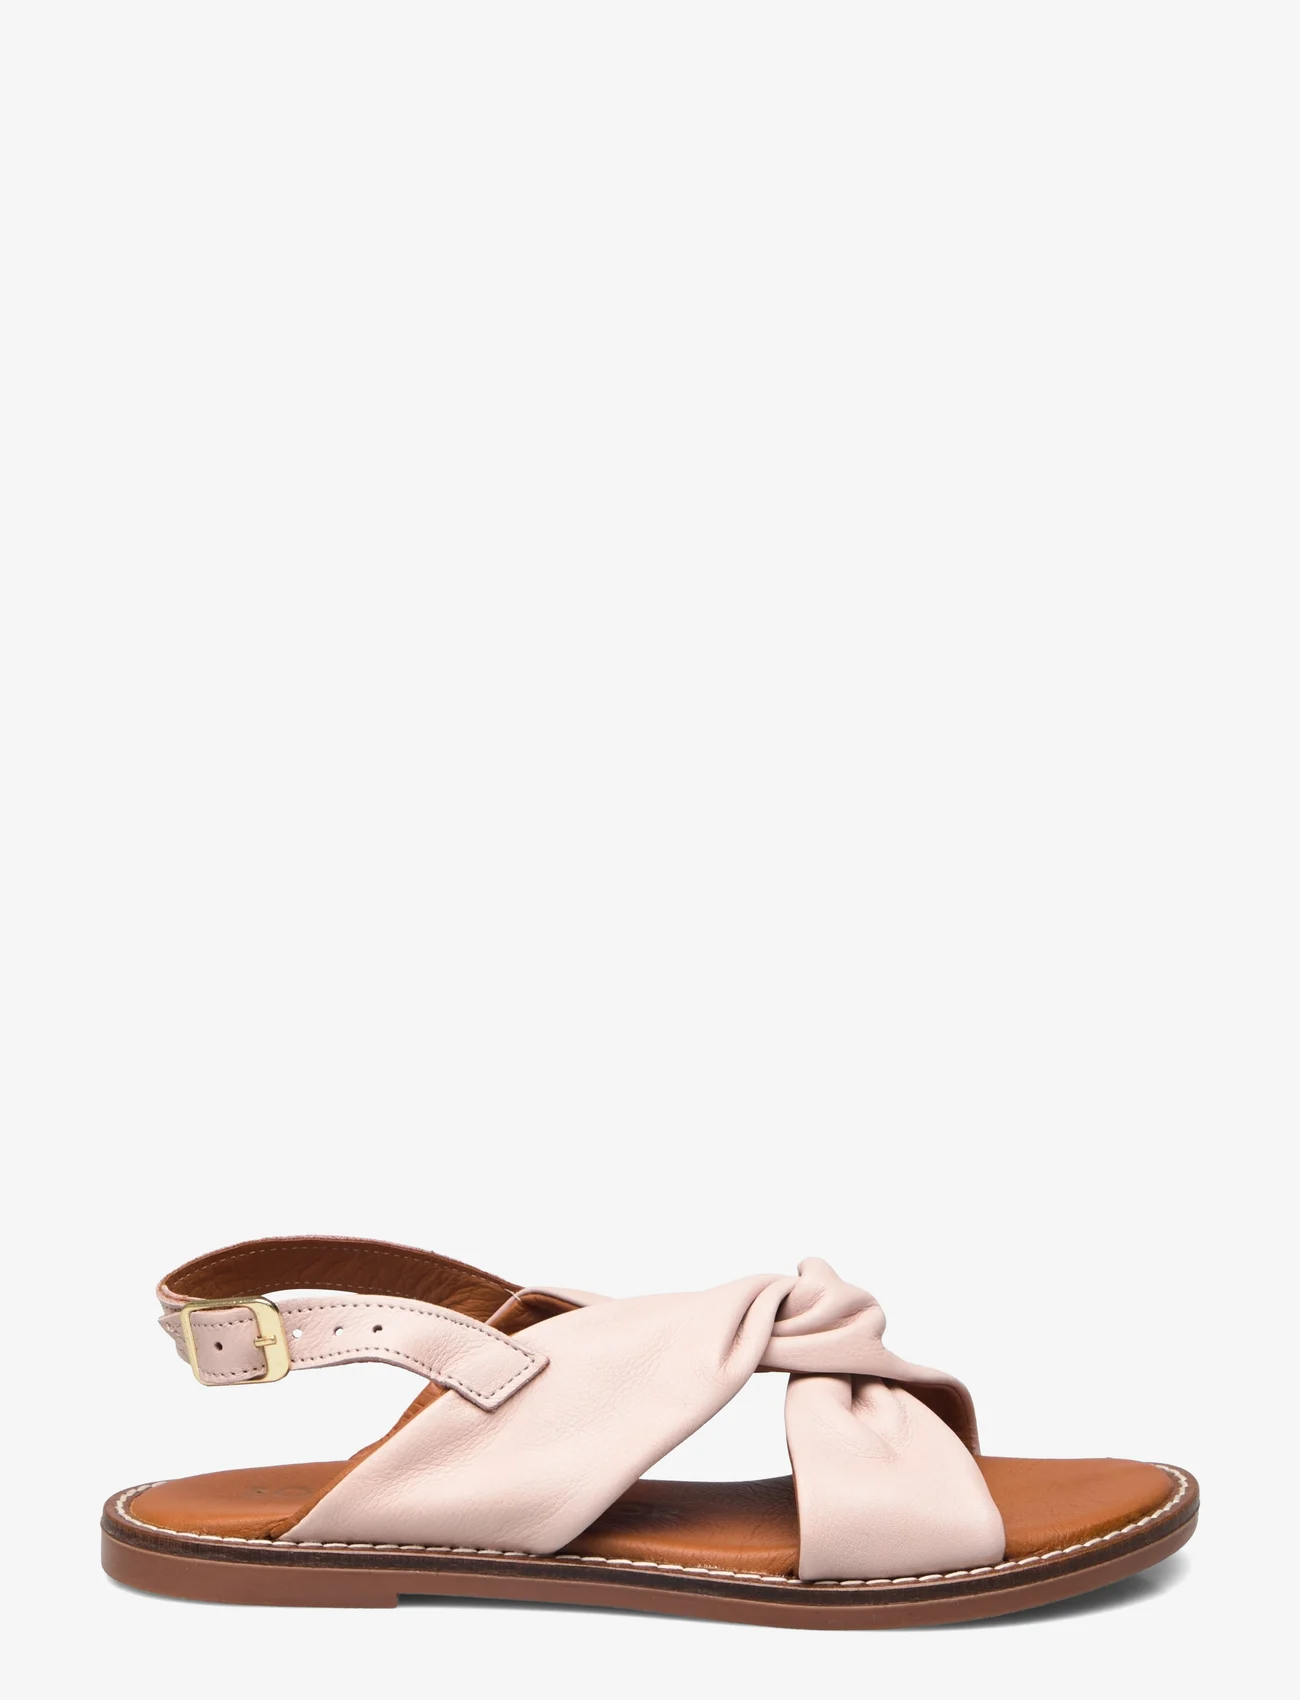 Sofie Schnoor - Sandal - flache sandalen - nude rose - 1